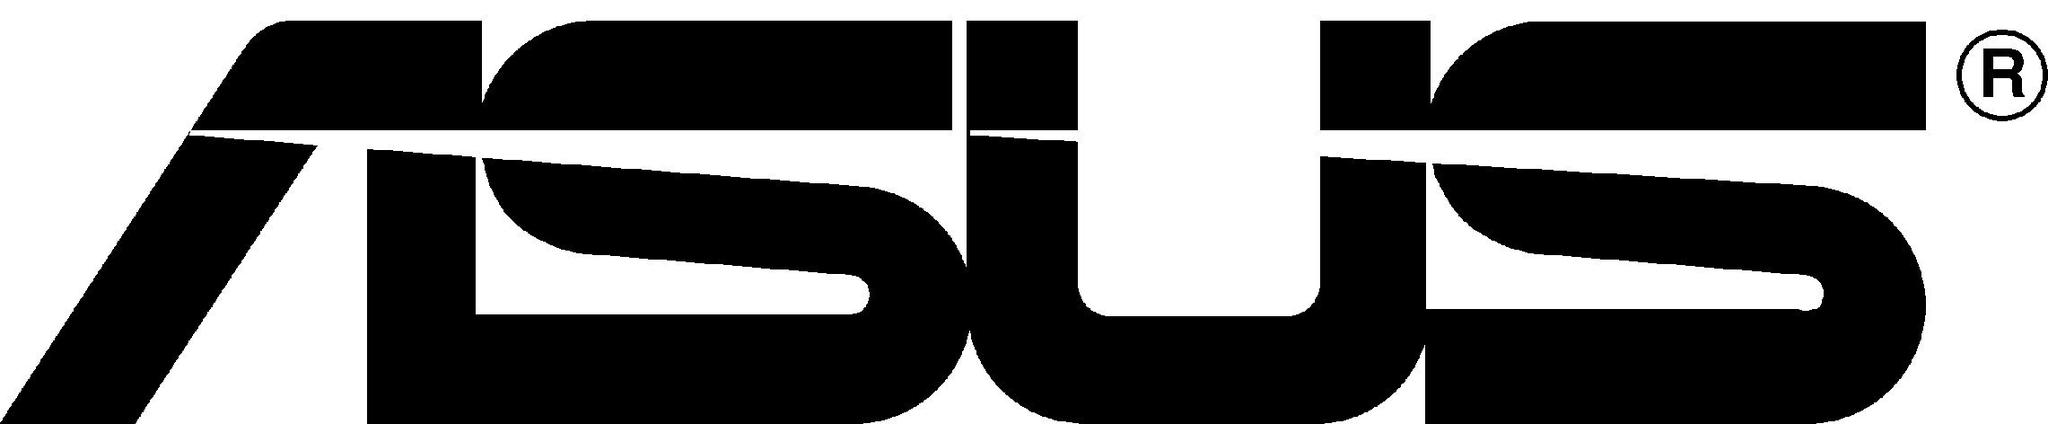 Image result for ASUS logo jpg